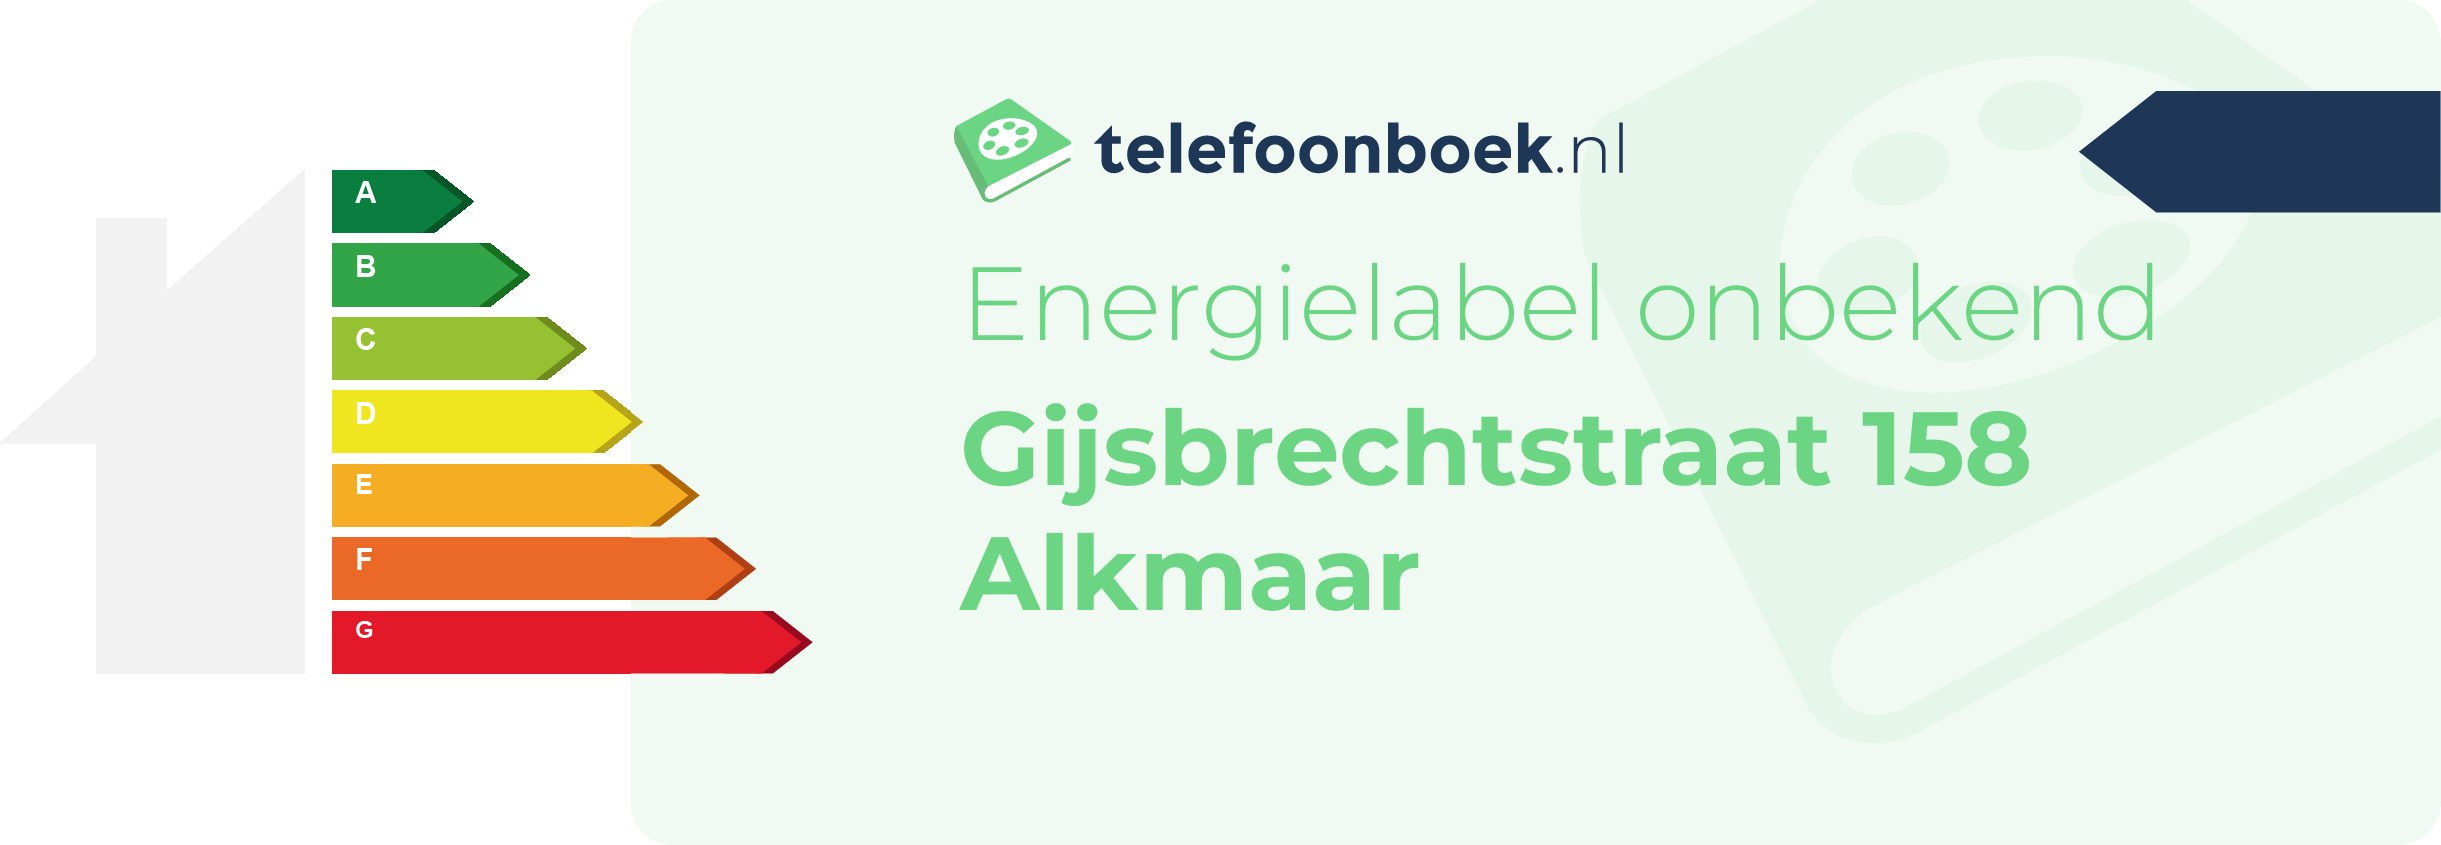 Energielabel Gijsbrechtstraat 158 Alkmaar